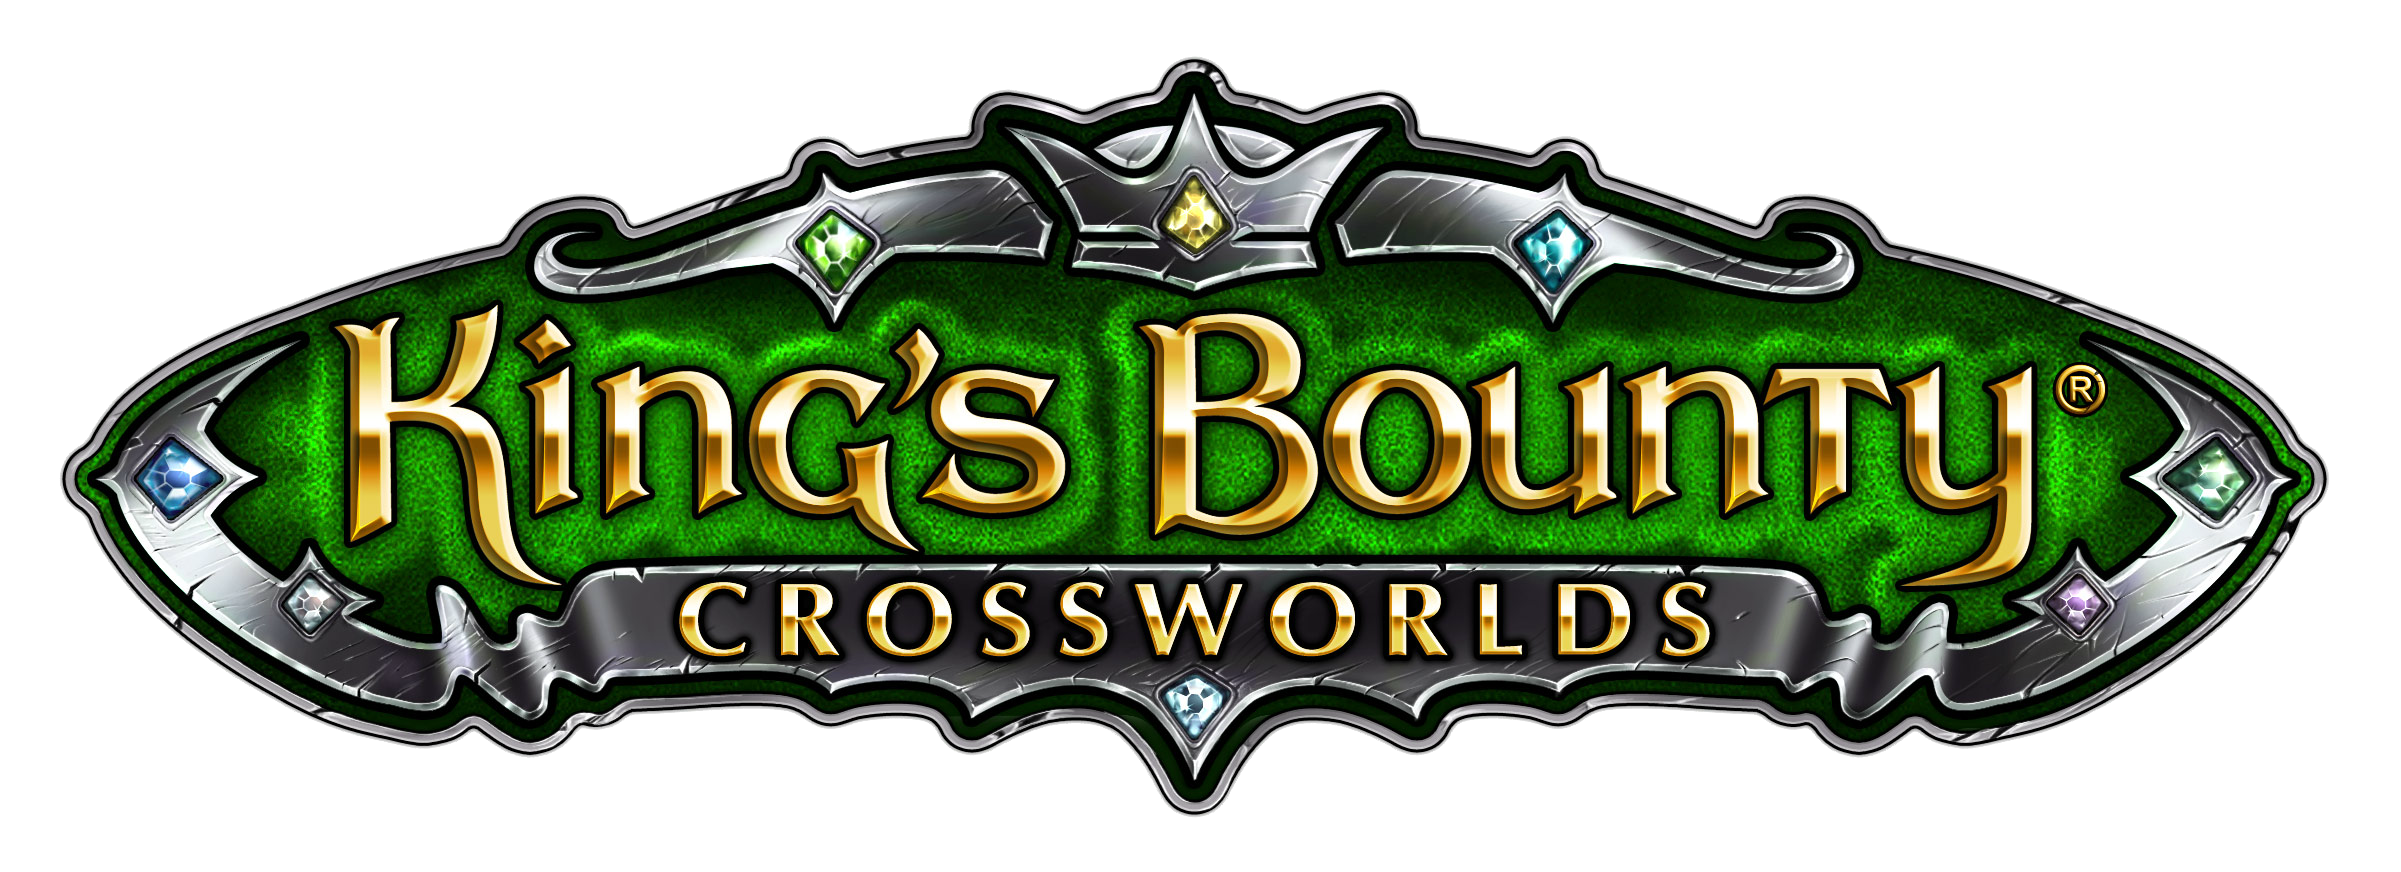 Steam kings bounty crossworlds фото 18